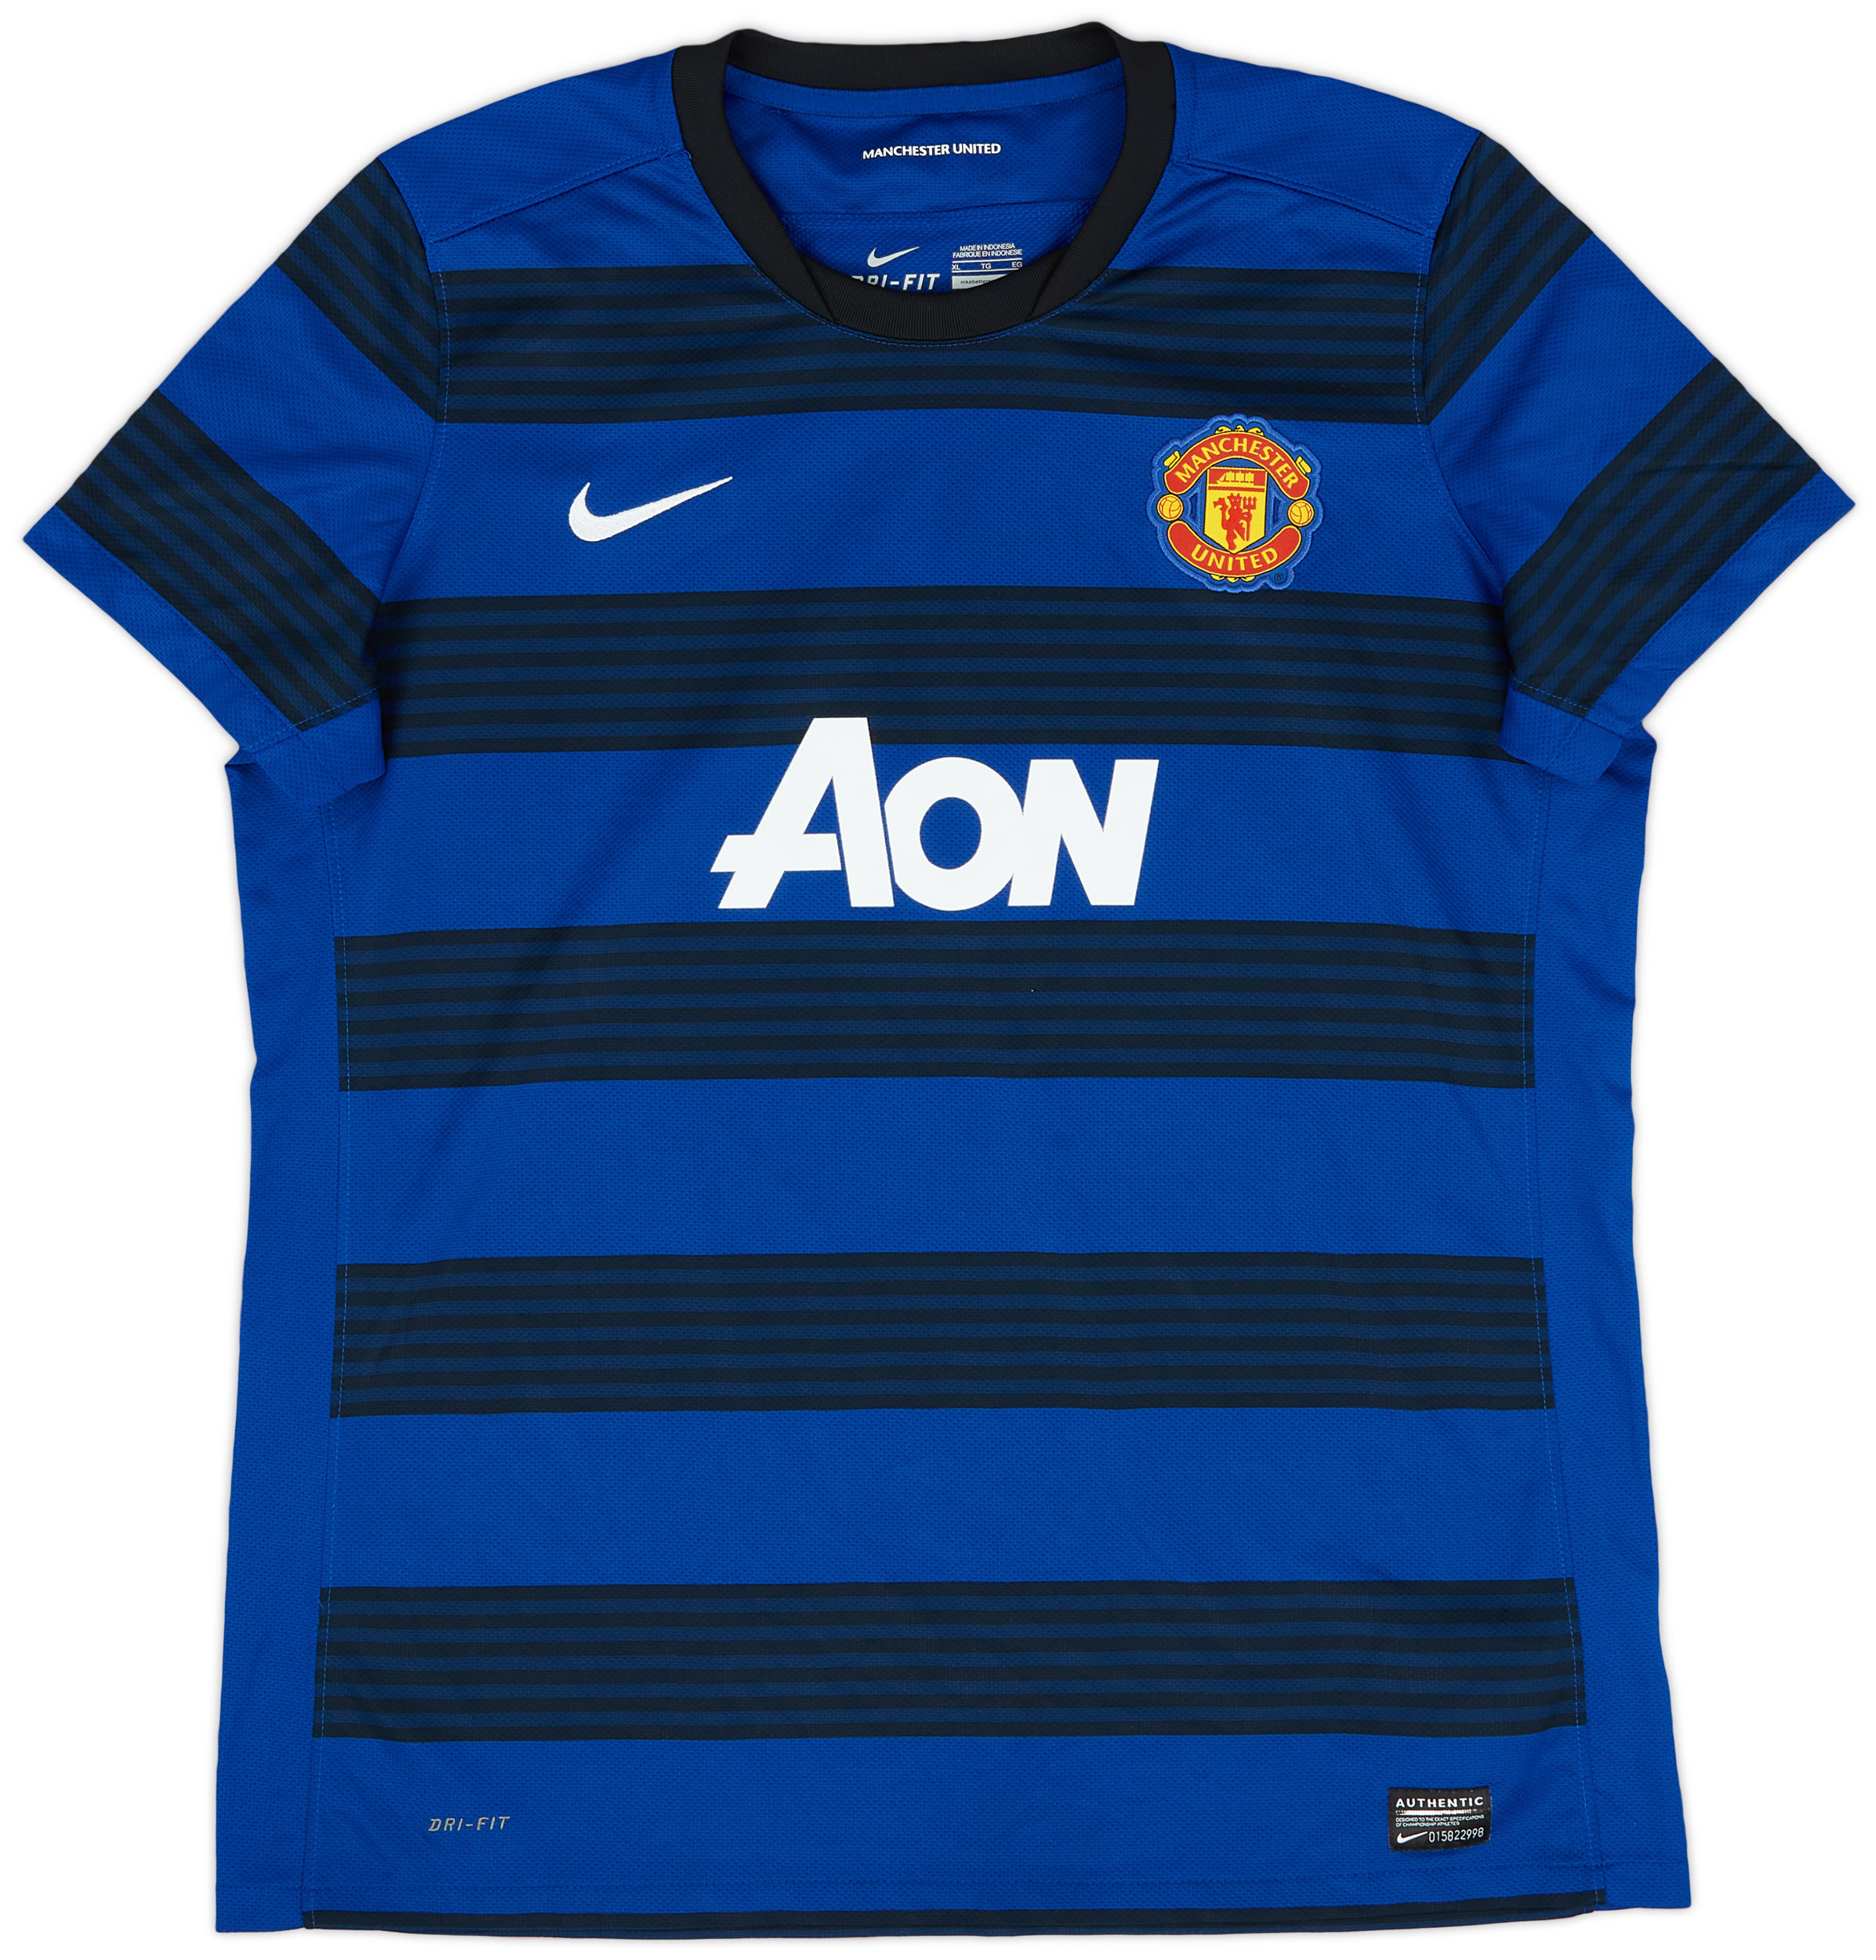 2011-13 Manchester United Away Shirt - 9/10 - (Women's )